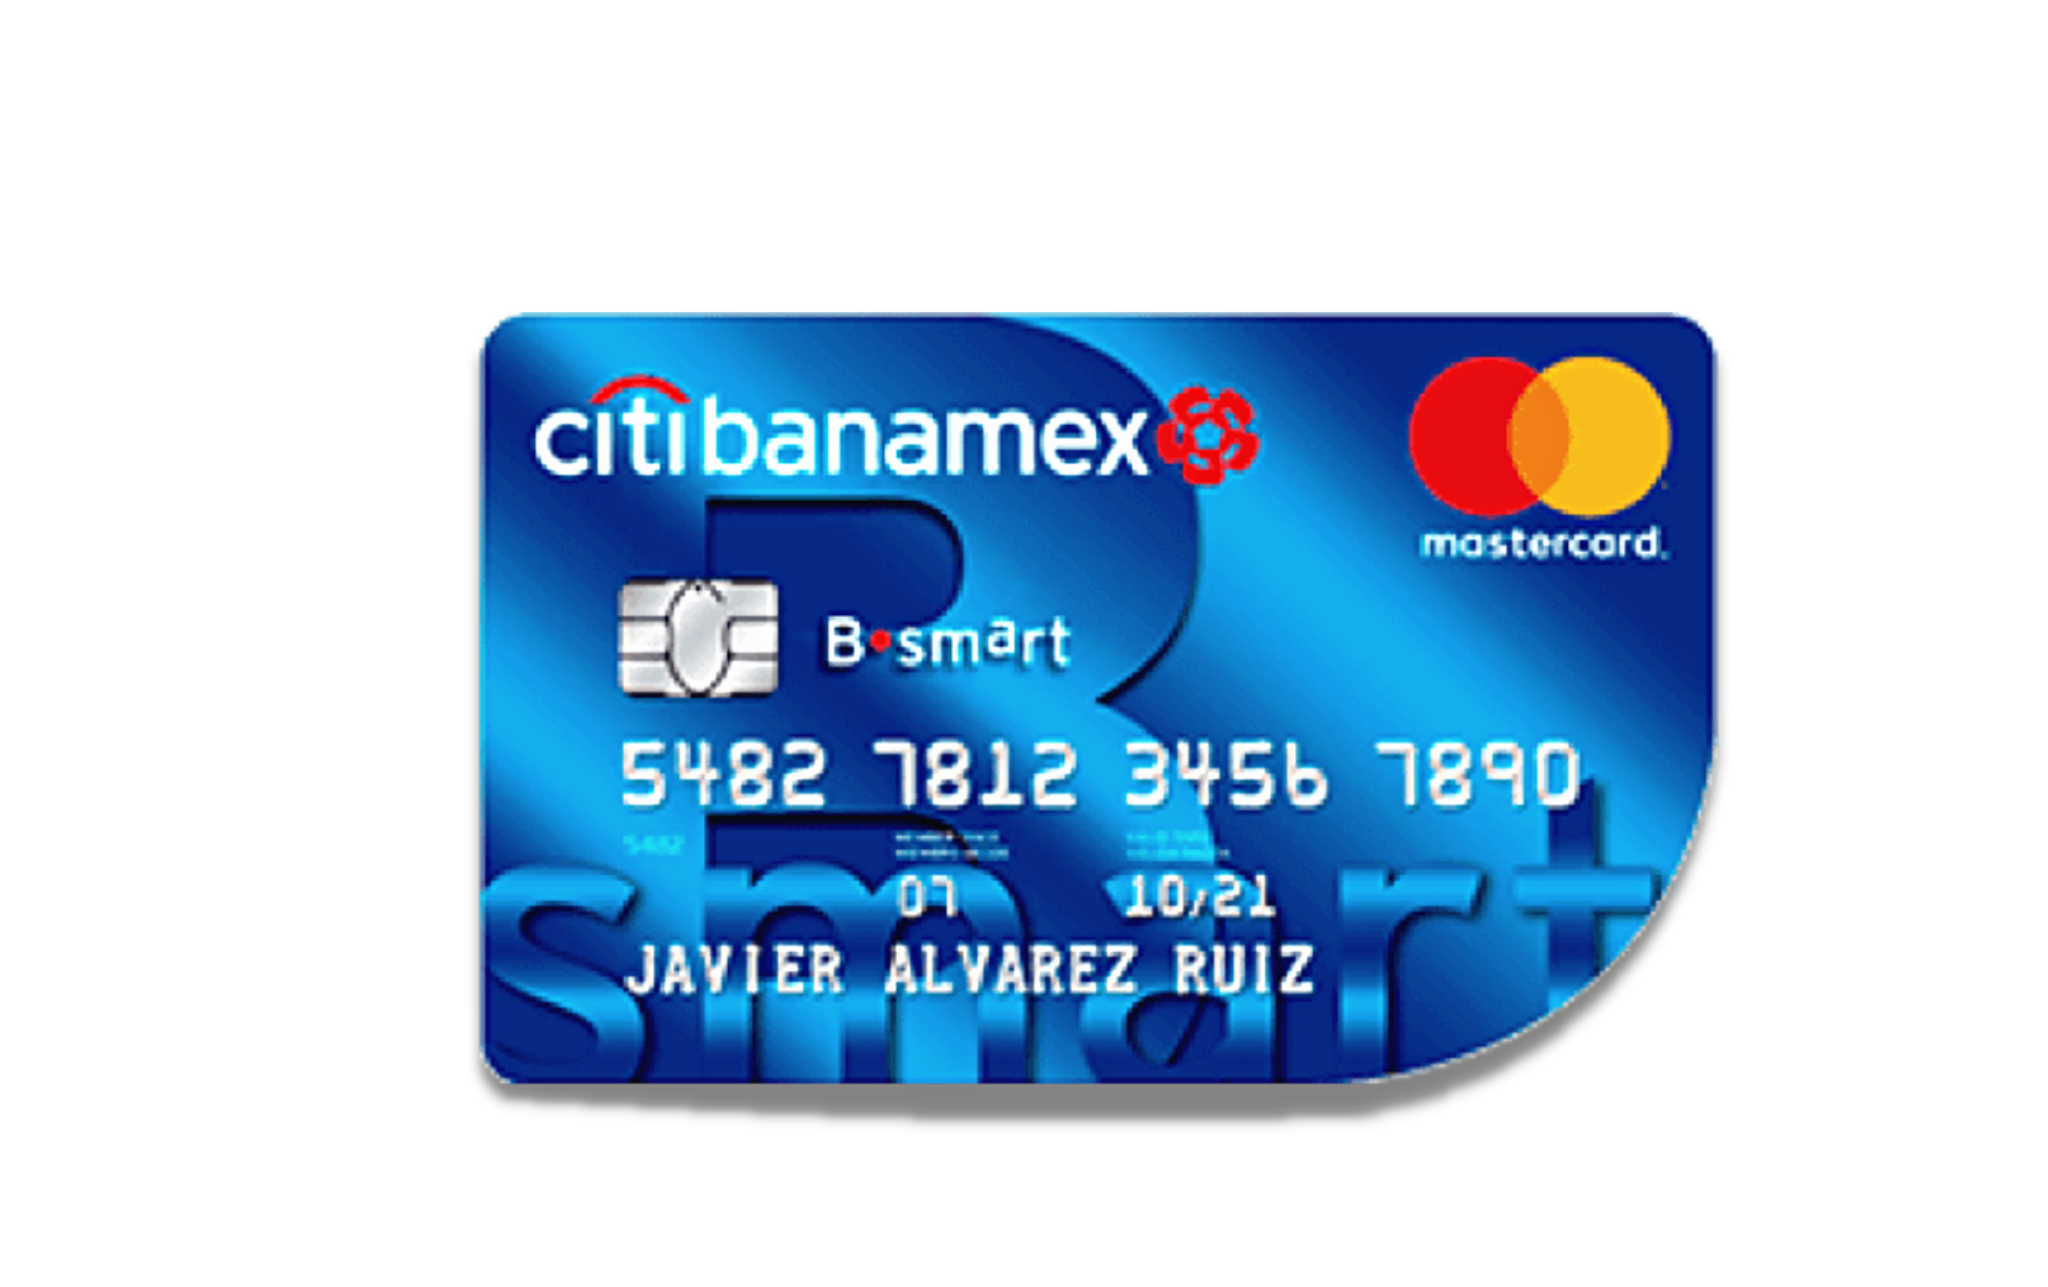 Tarjeta de crédito Bsmart Citibanamex